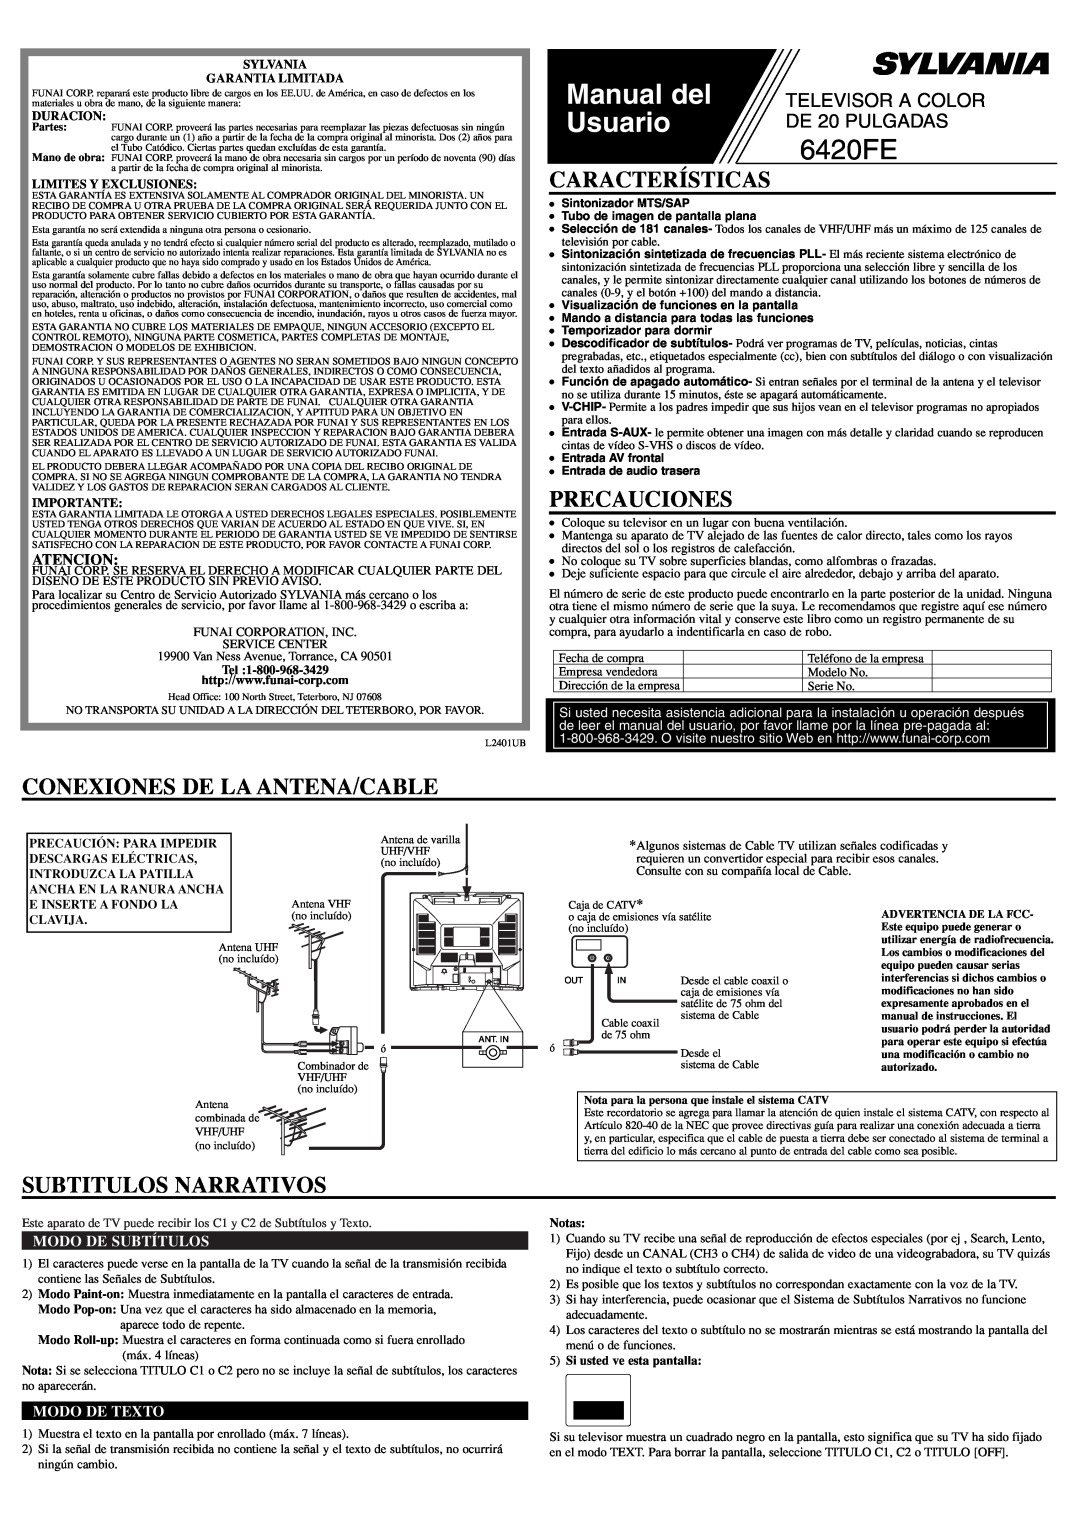 Sylvania 6420FE Características, Precauciones, Conexiones De La Antena/Cable, Subtitulos Narrativos, Atencion, Manual del 